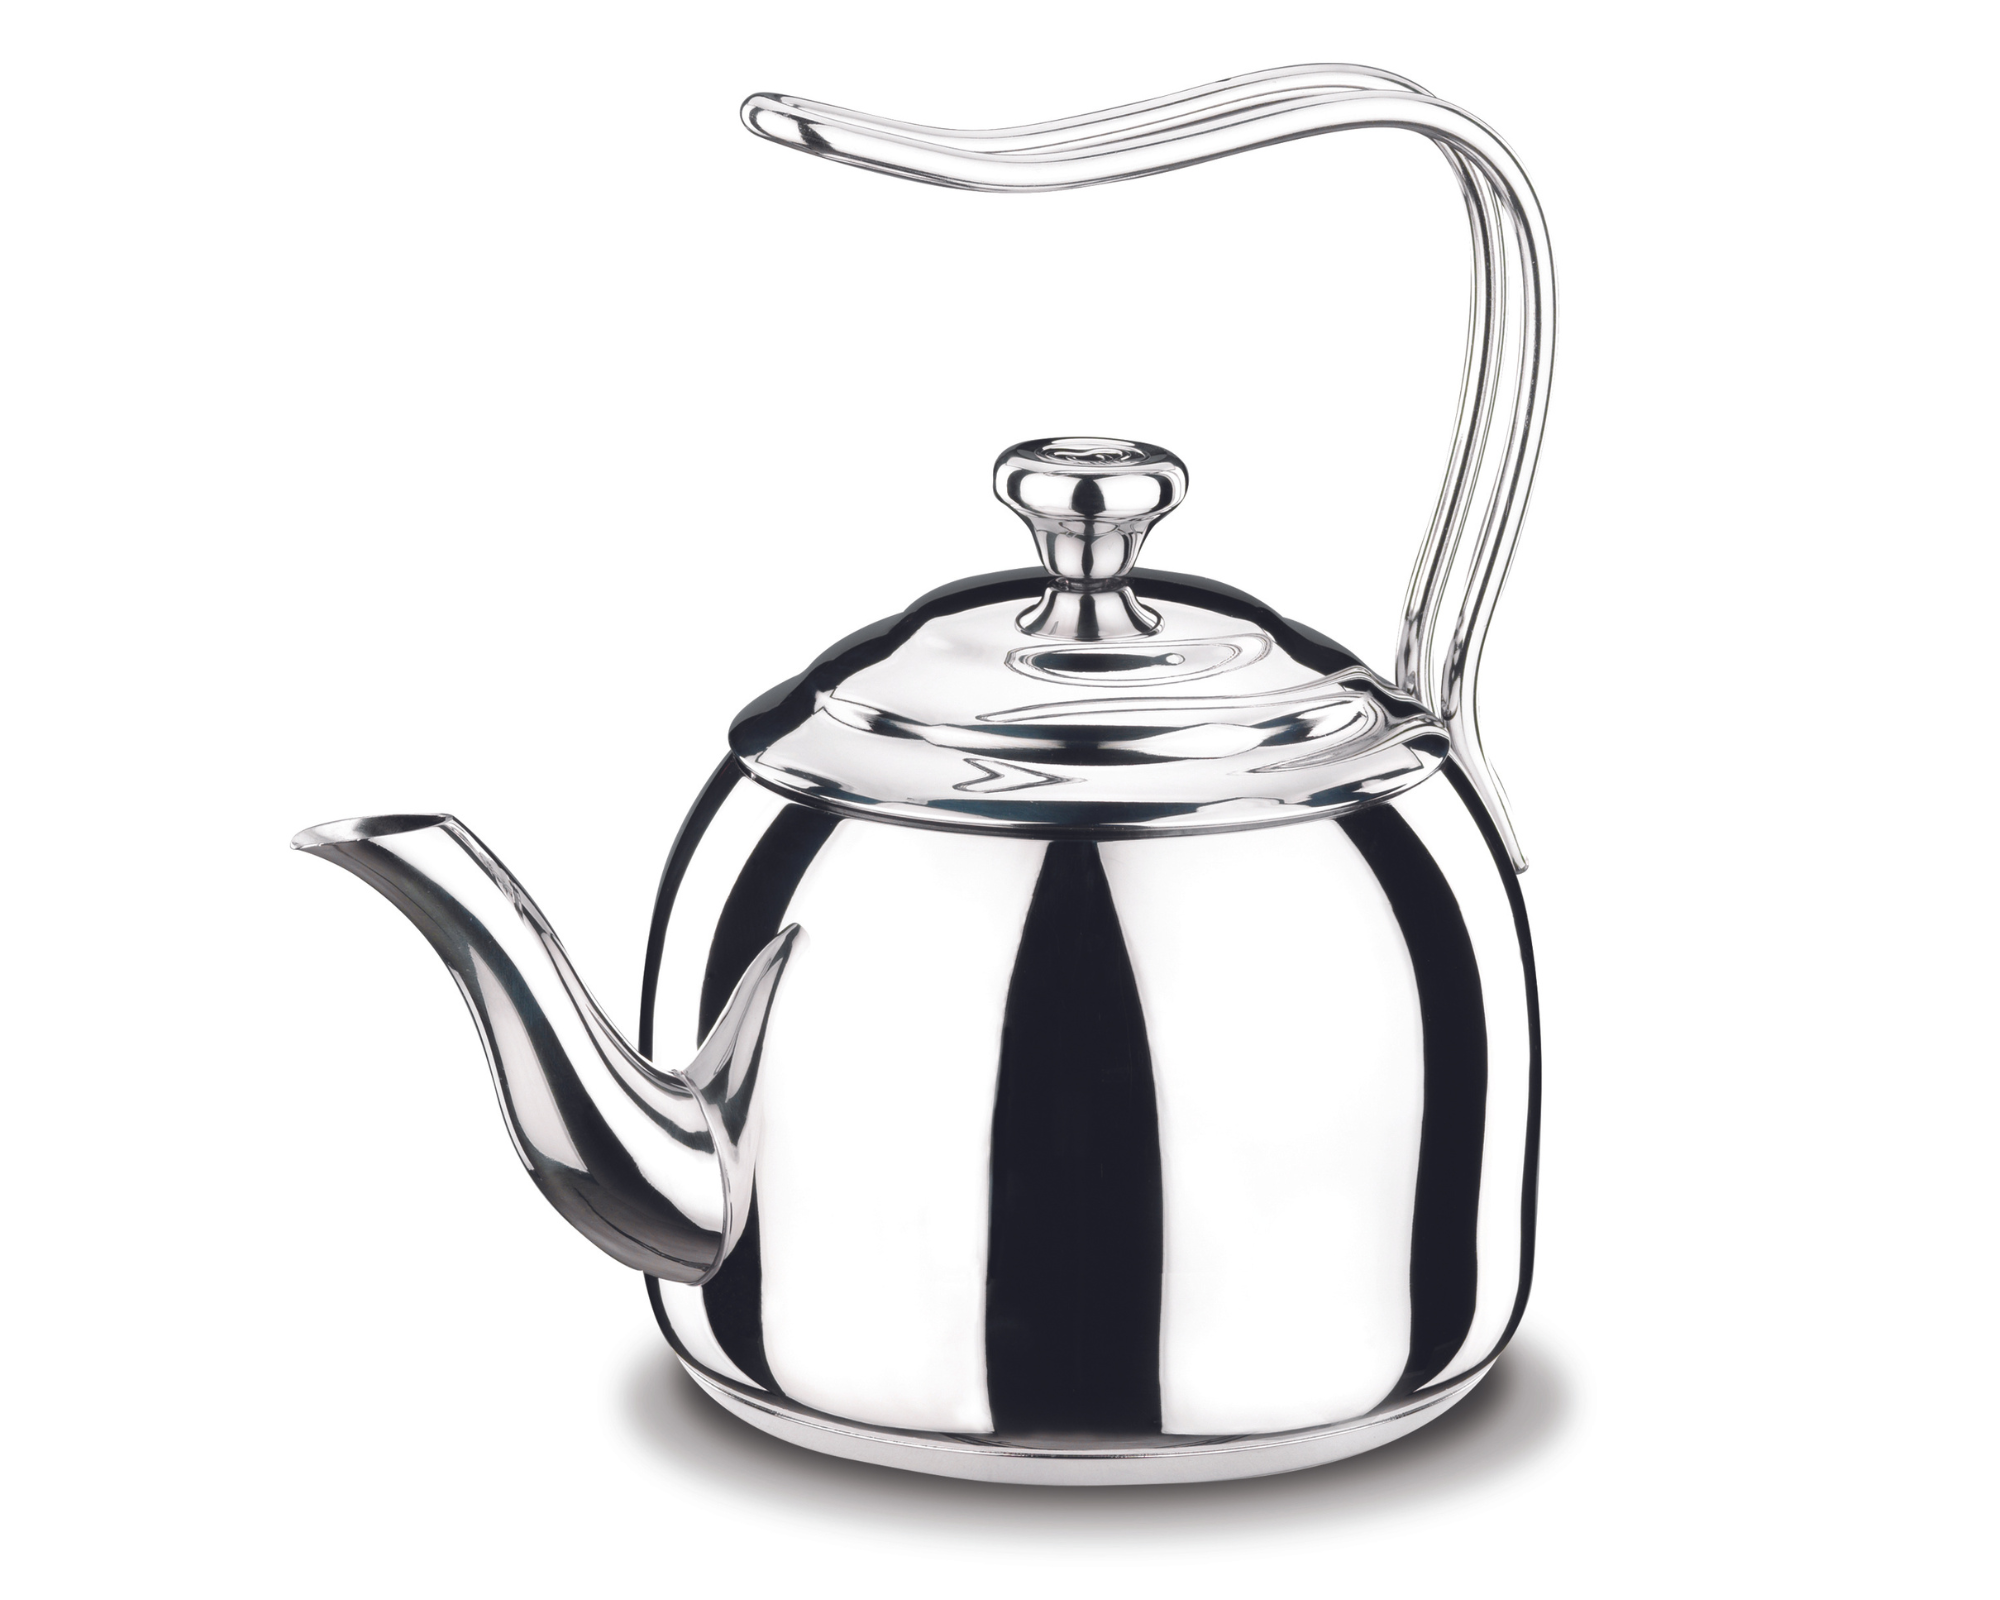  Droppa  Stainless steel Tea Pot 3.5 l.